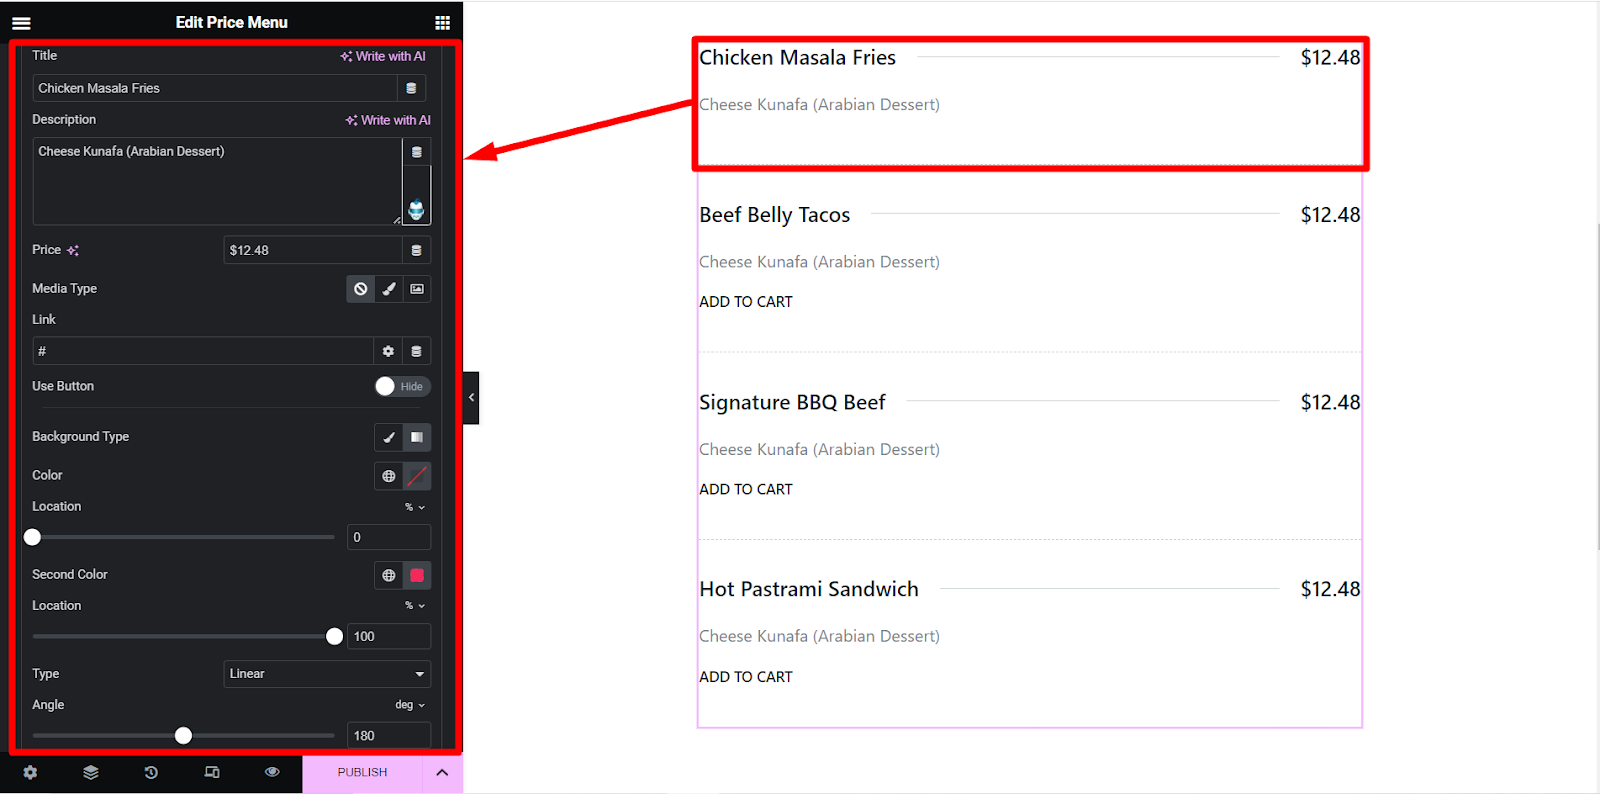 El widget de menú de precios de ElementsKit le da a su lista de precios una apariencia elegante.